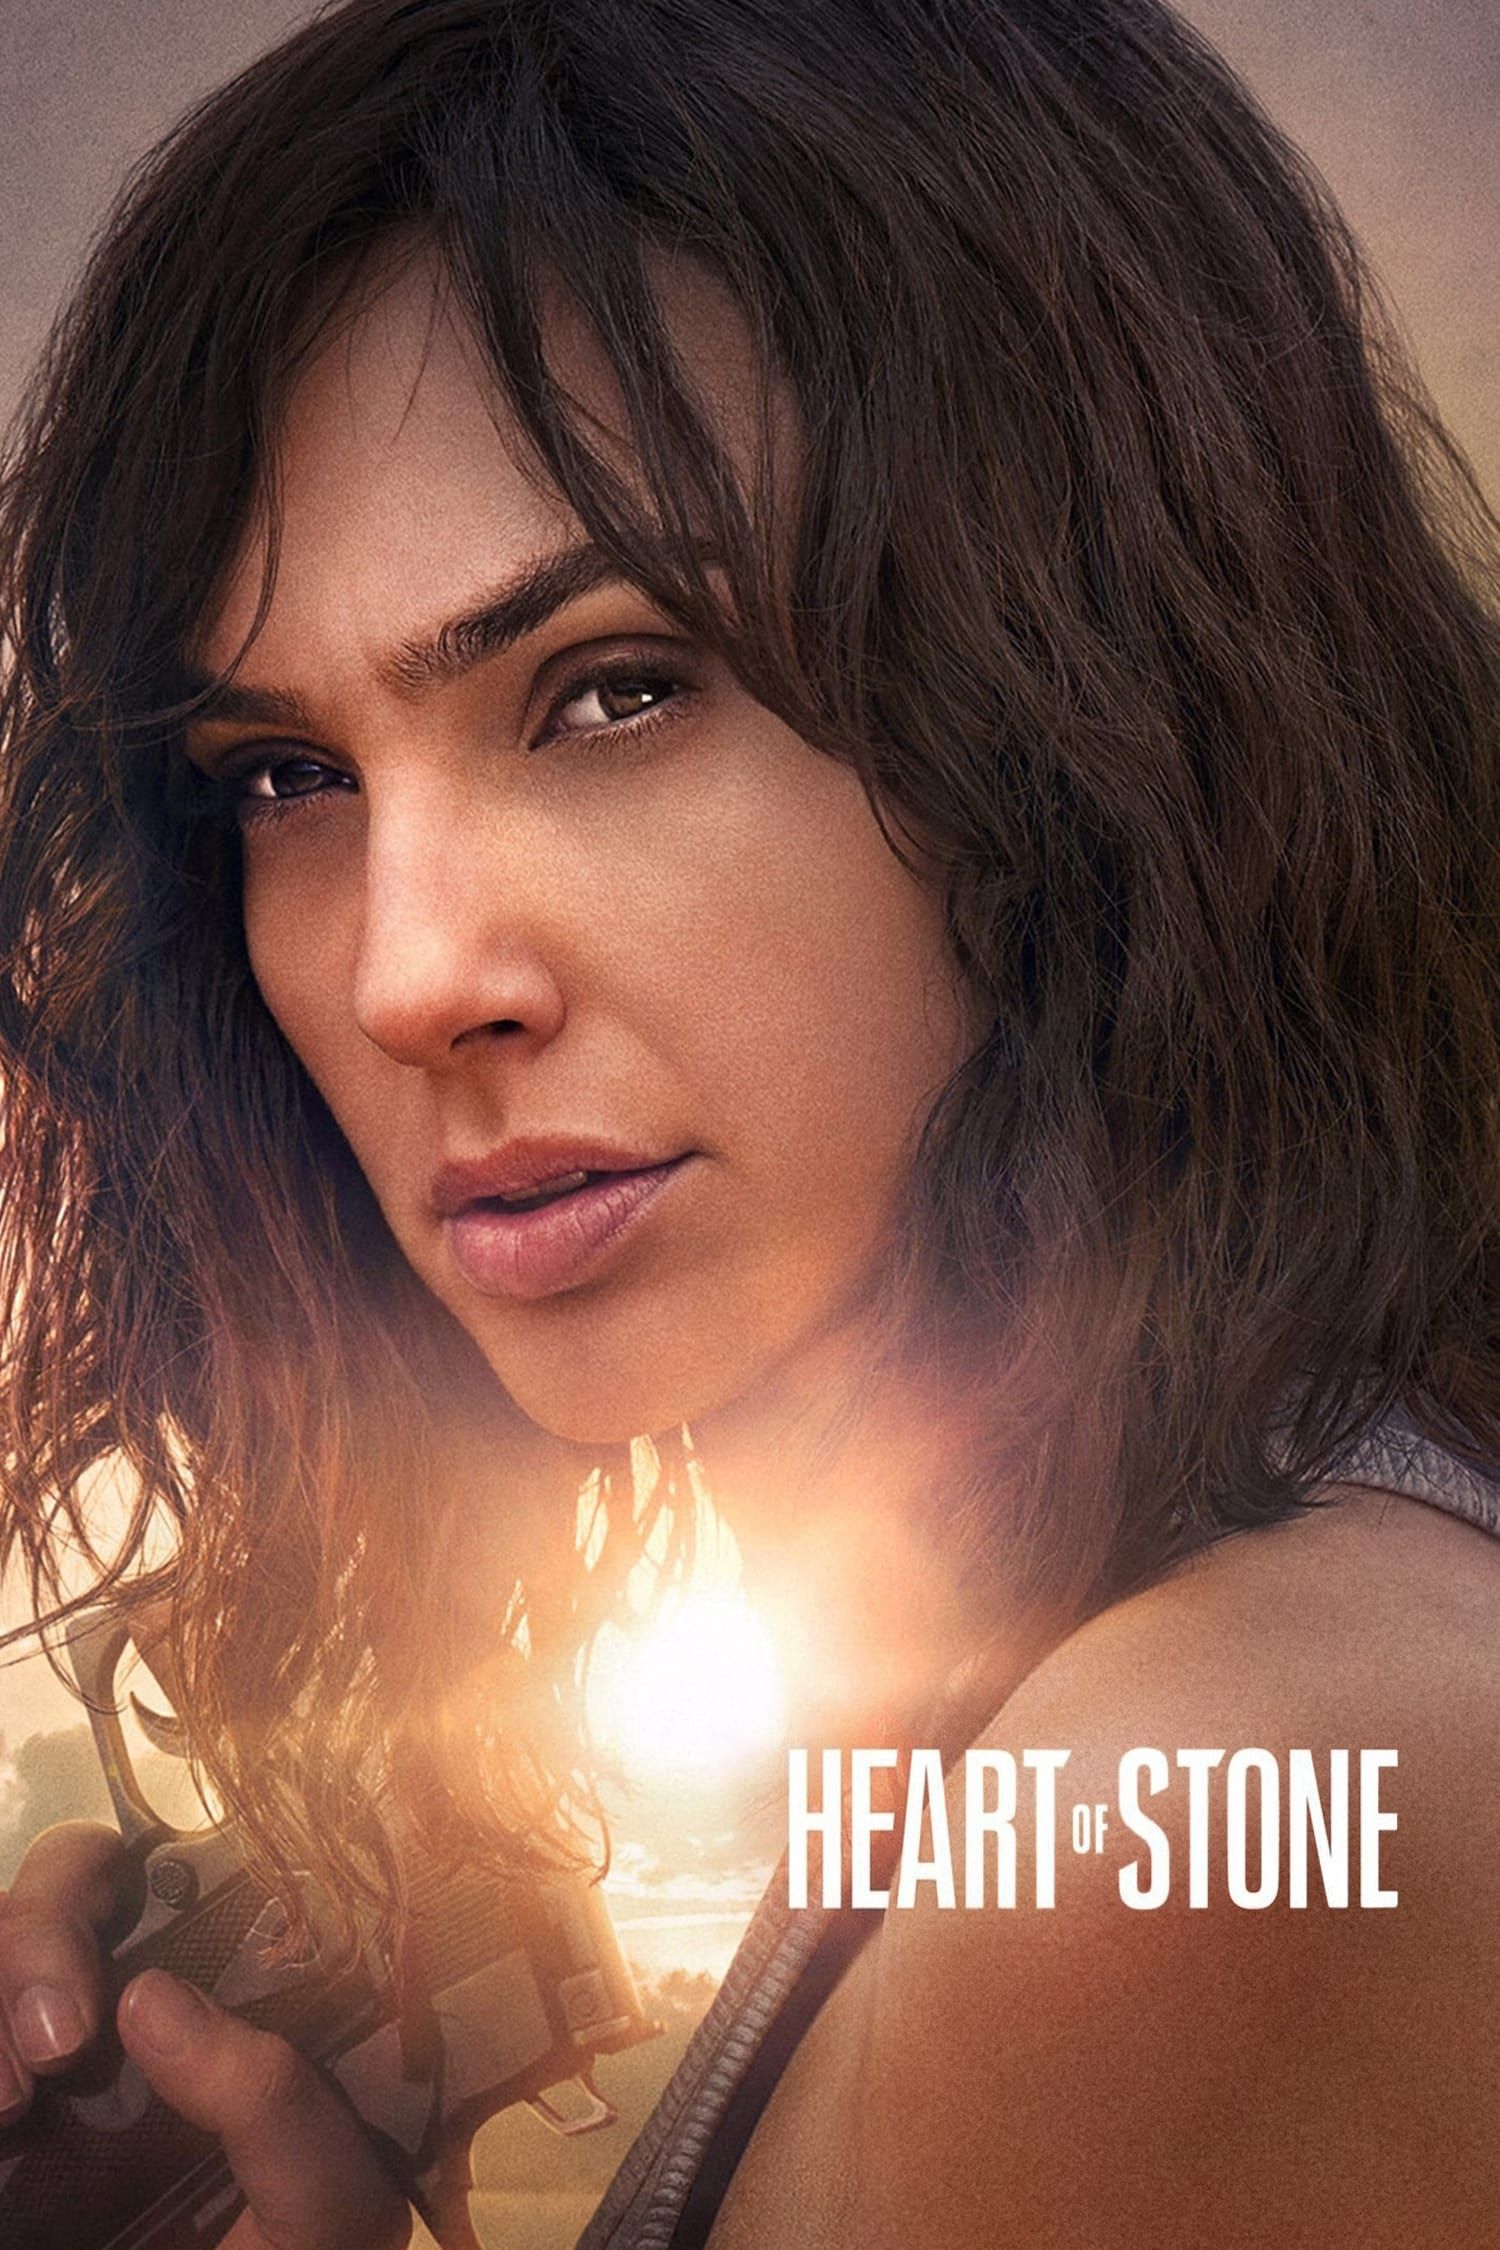 Watch Red Stone (2021) Full Movie Free Online - Plex